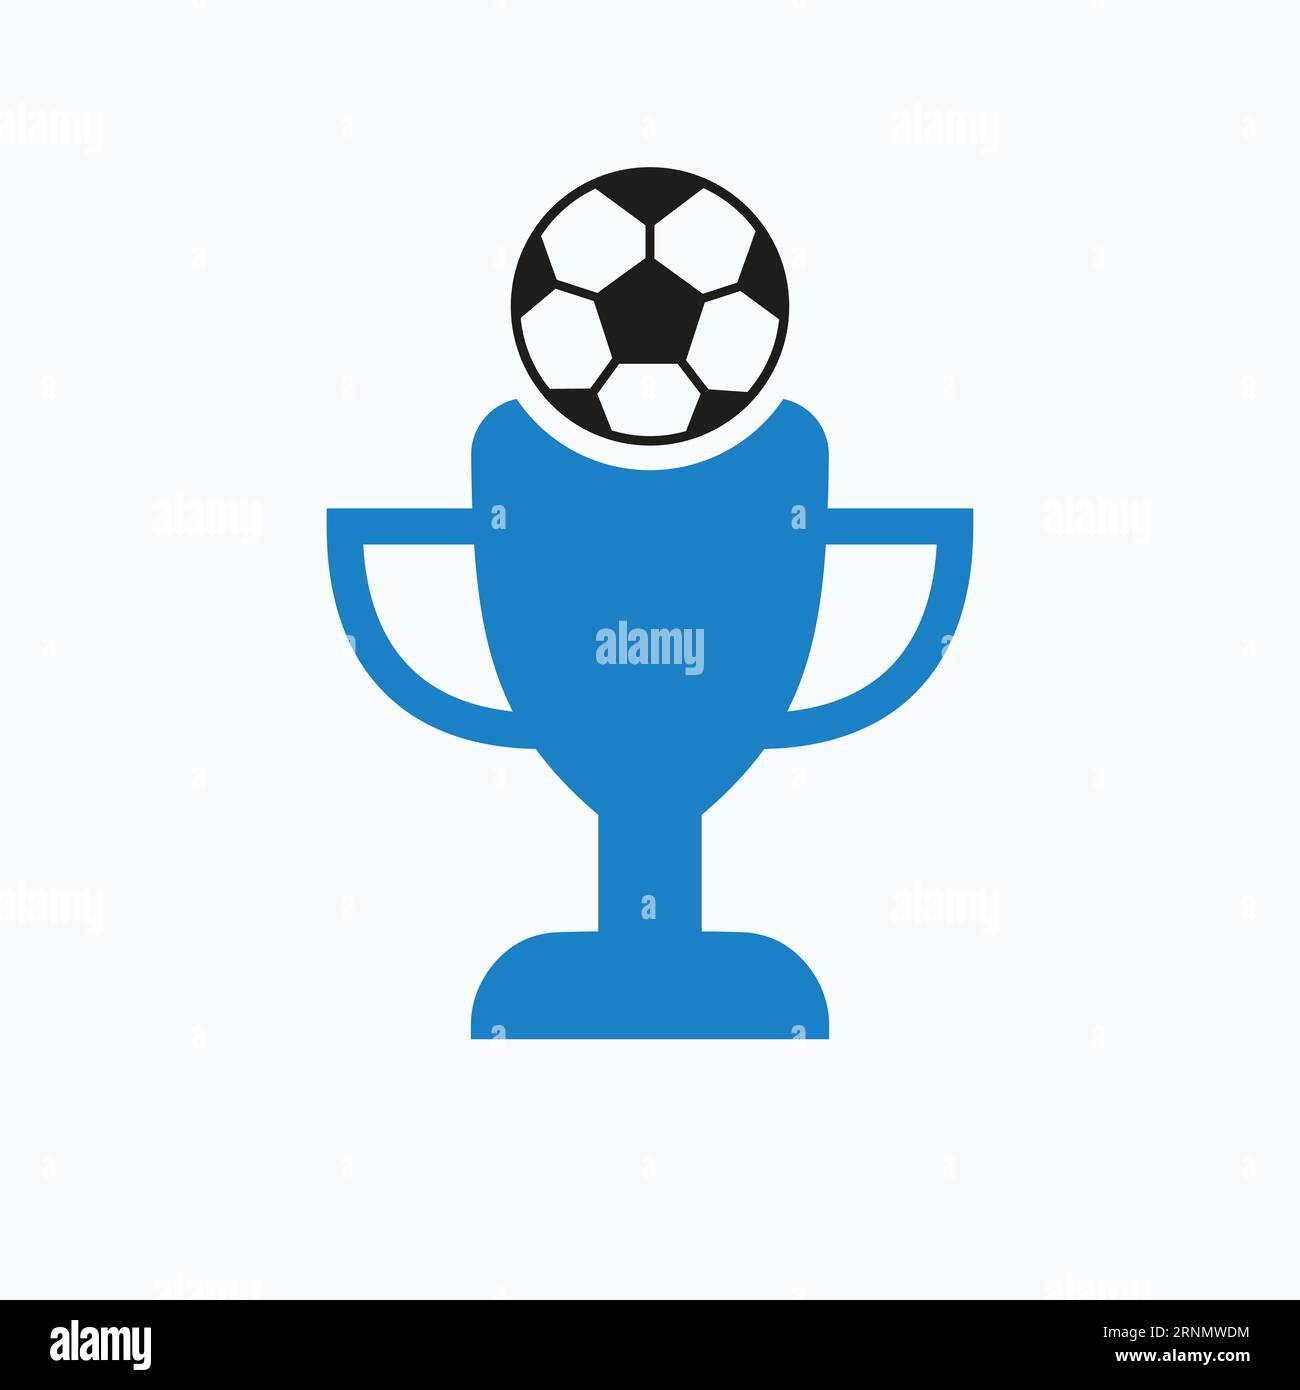 Design-Konzept für Fußball- oder Fußball-Championship-Trophäen-Logo mit Fußball- und Trophäen-Symbol Stock Vektor